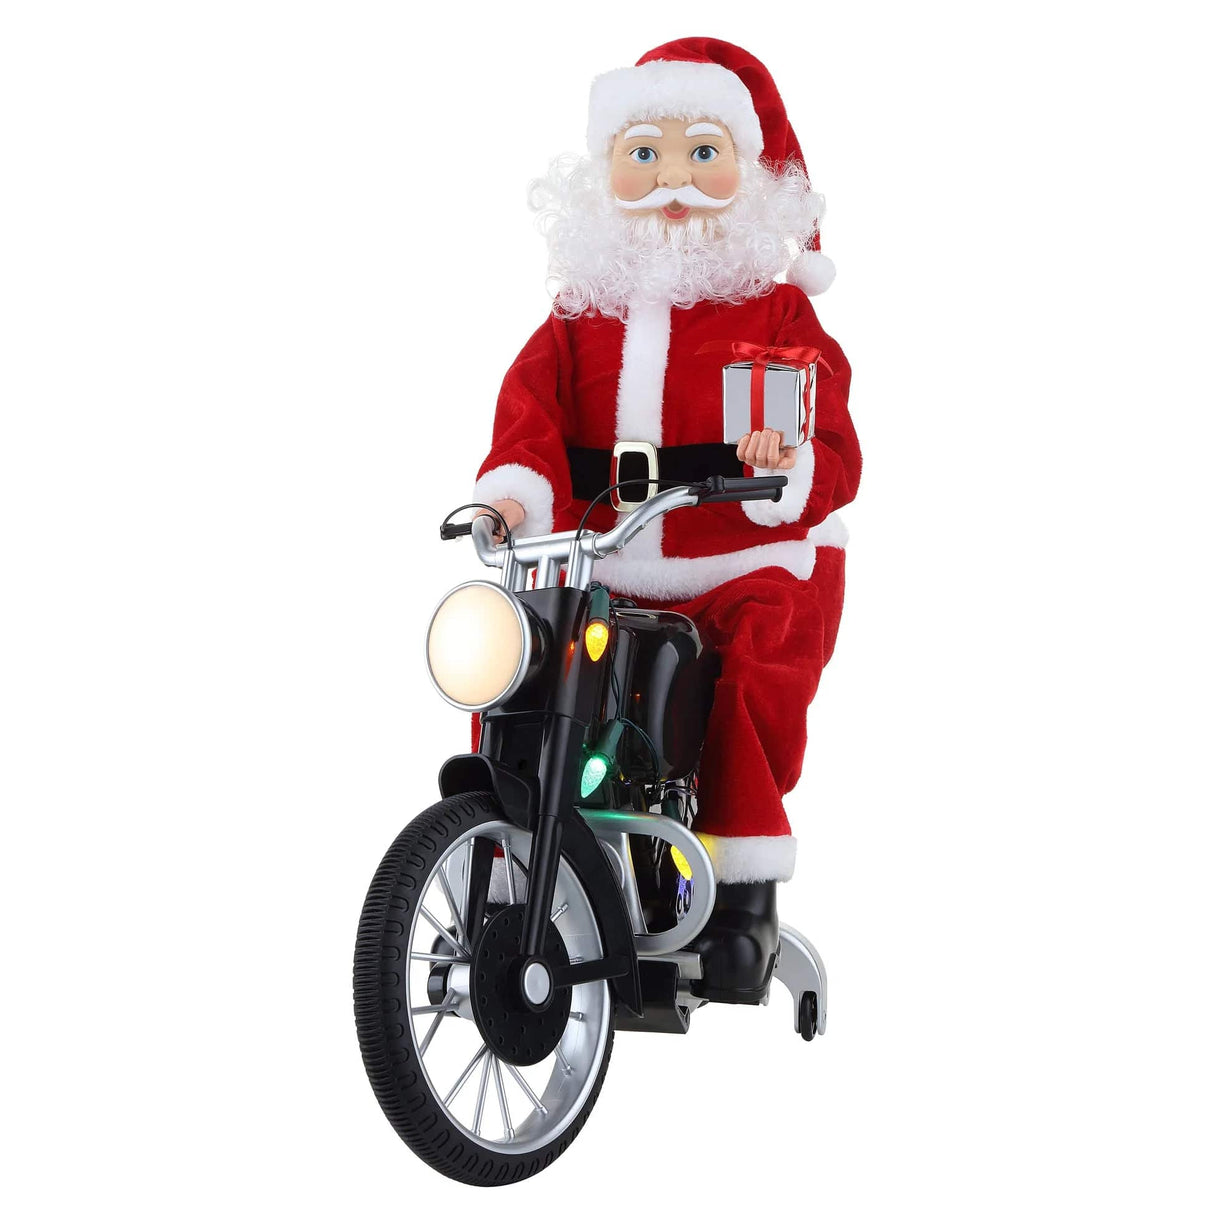 Motorcycling Santa